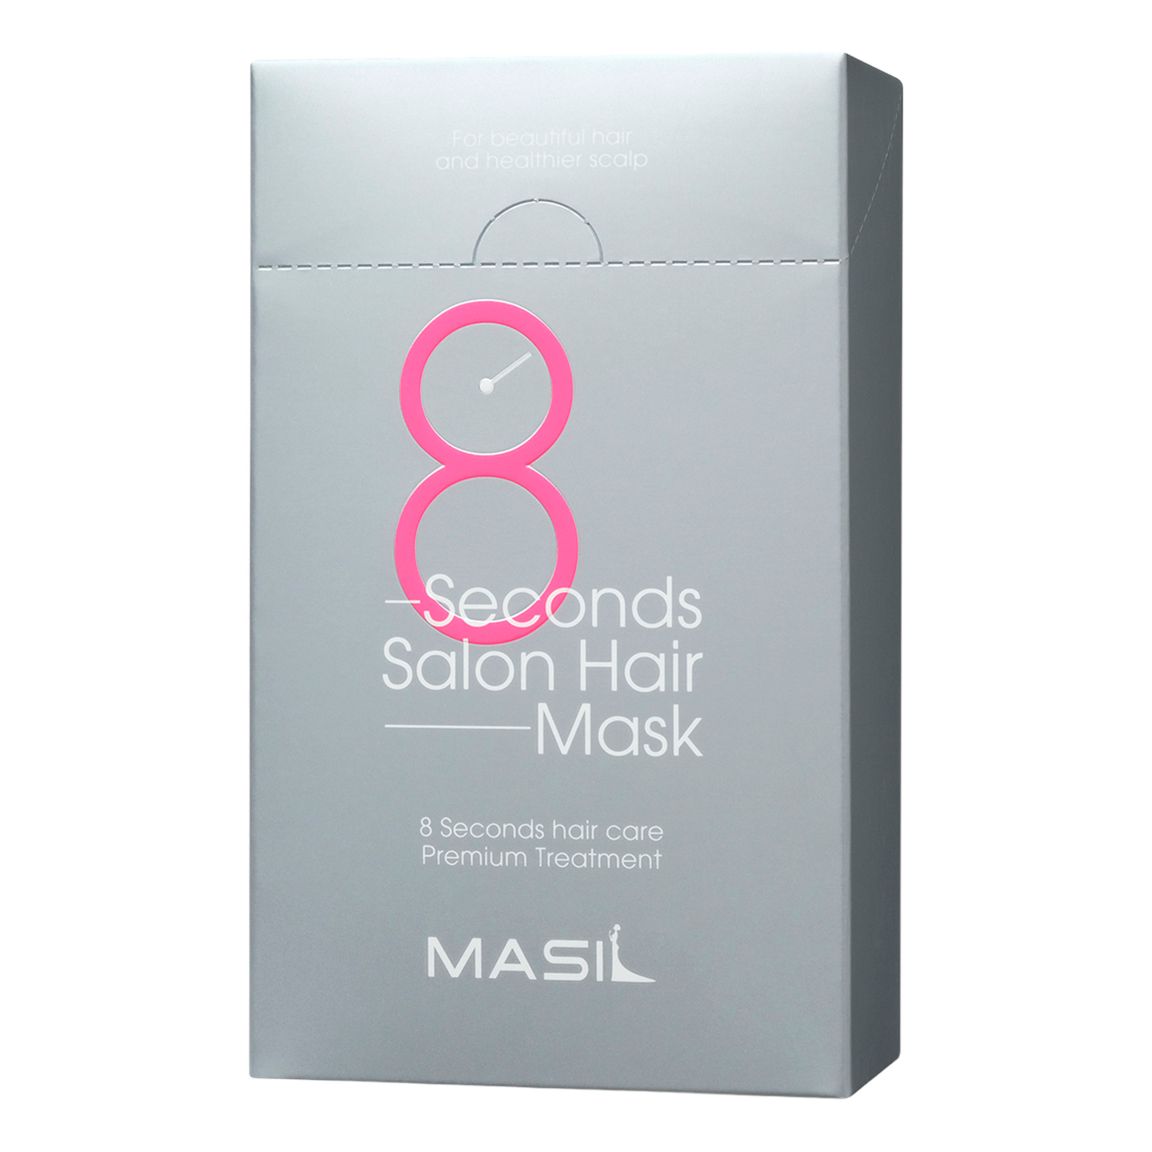 Маска Masil 8 Seconds Salon Hair для быстрого восстановления волос 8 мл х 10 шт